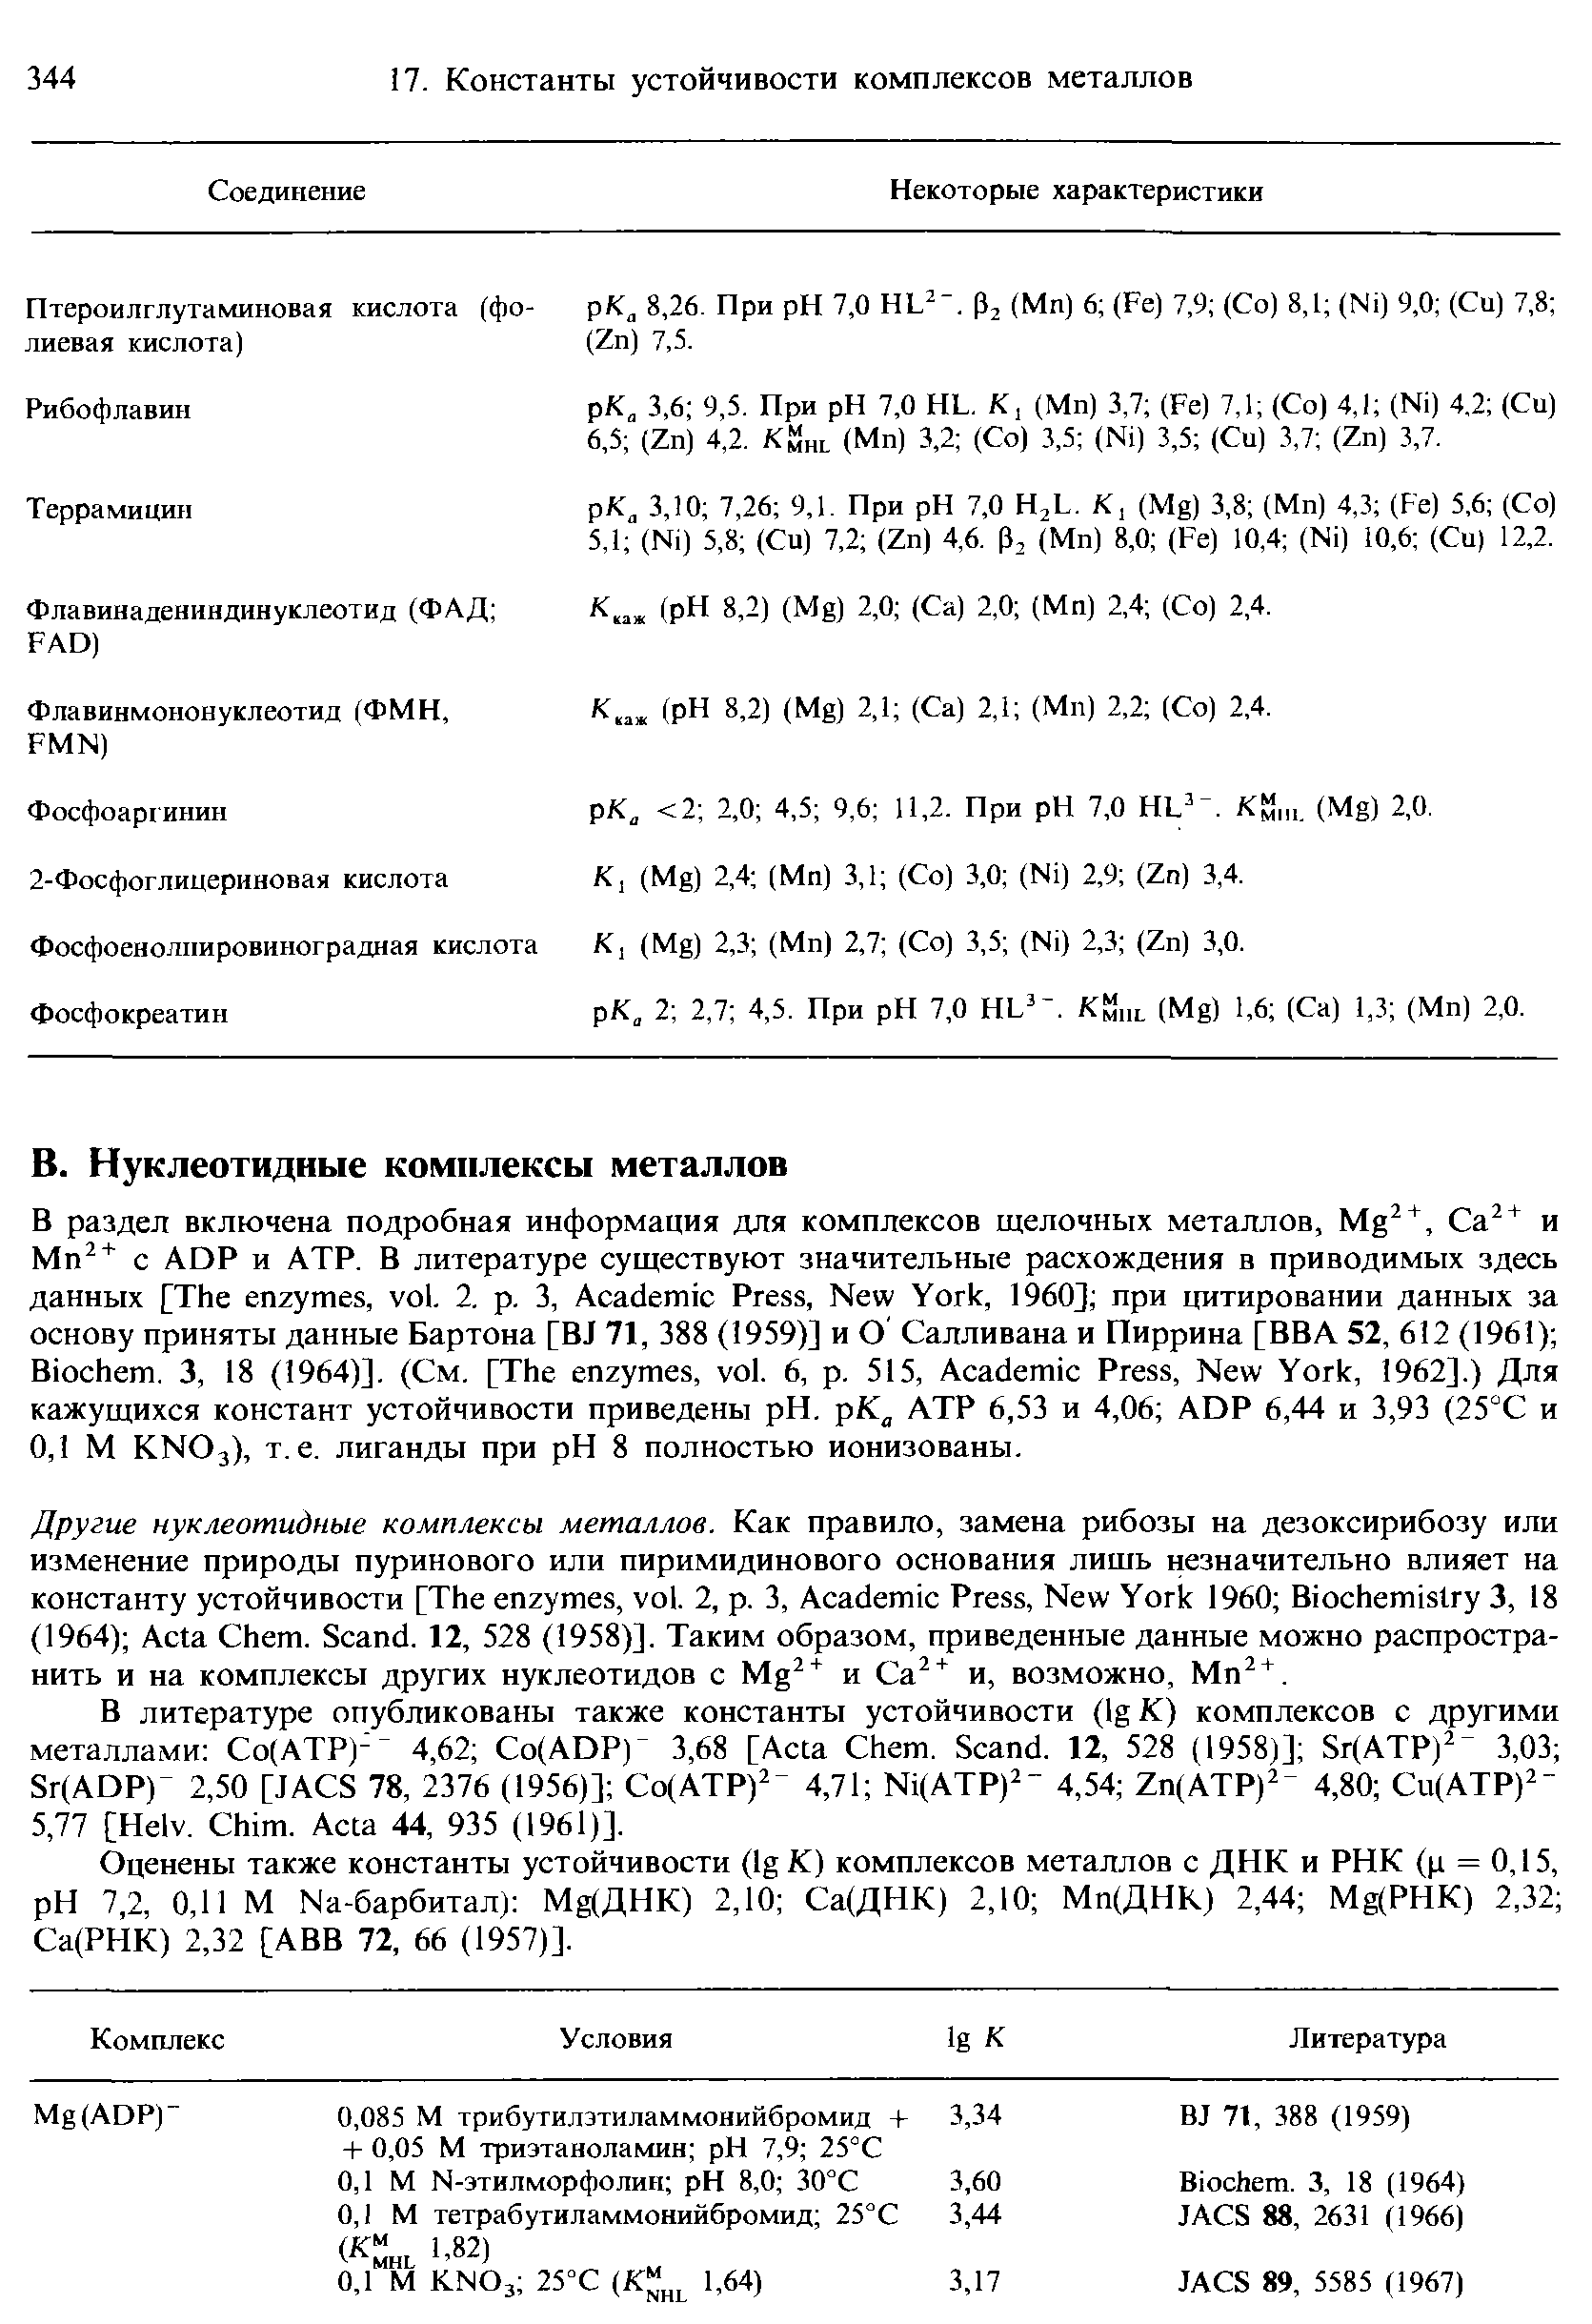 В литературе опубликованы также константы устойчивости (Ig К) комплексов с другими металлами Со(АТР)- 4,62 o(ADP) 3,68 [A ta hem. S and. 12, 528 (1958)] Sr(ATP) 3,03 Sr(ADP) 2,50 [JA S 78, 2376 (1956)] o(ATP) 4,71 Ni(ATP) 4,54 Zn(ATP) 4,80 u(ATP) 5,77 [Helv. him. A ta 44, 935 (1961)].